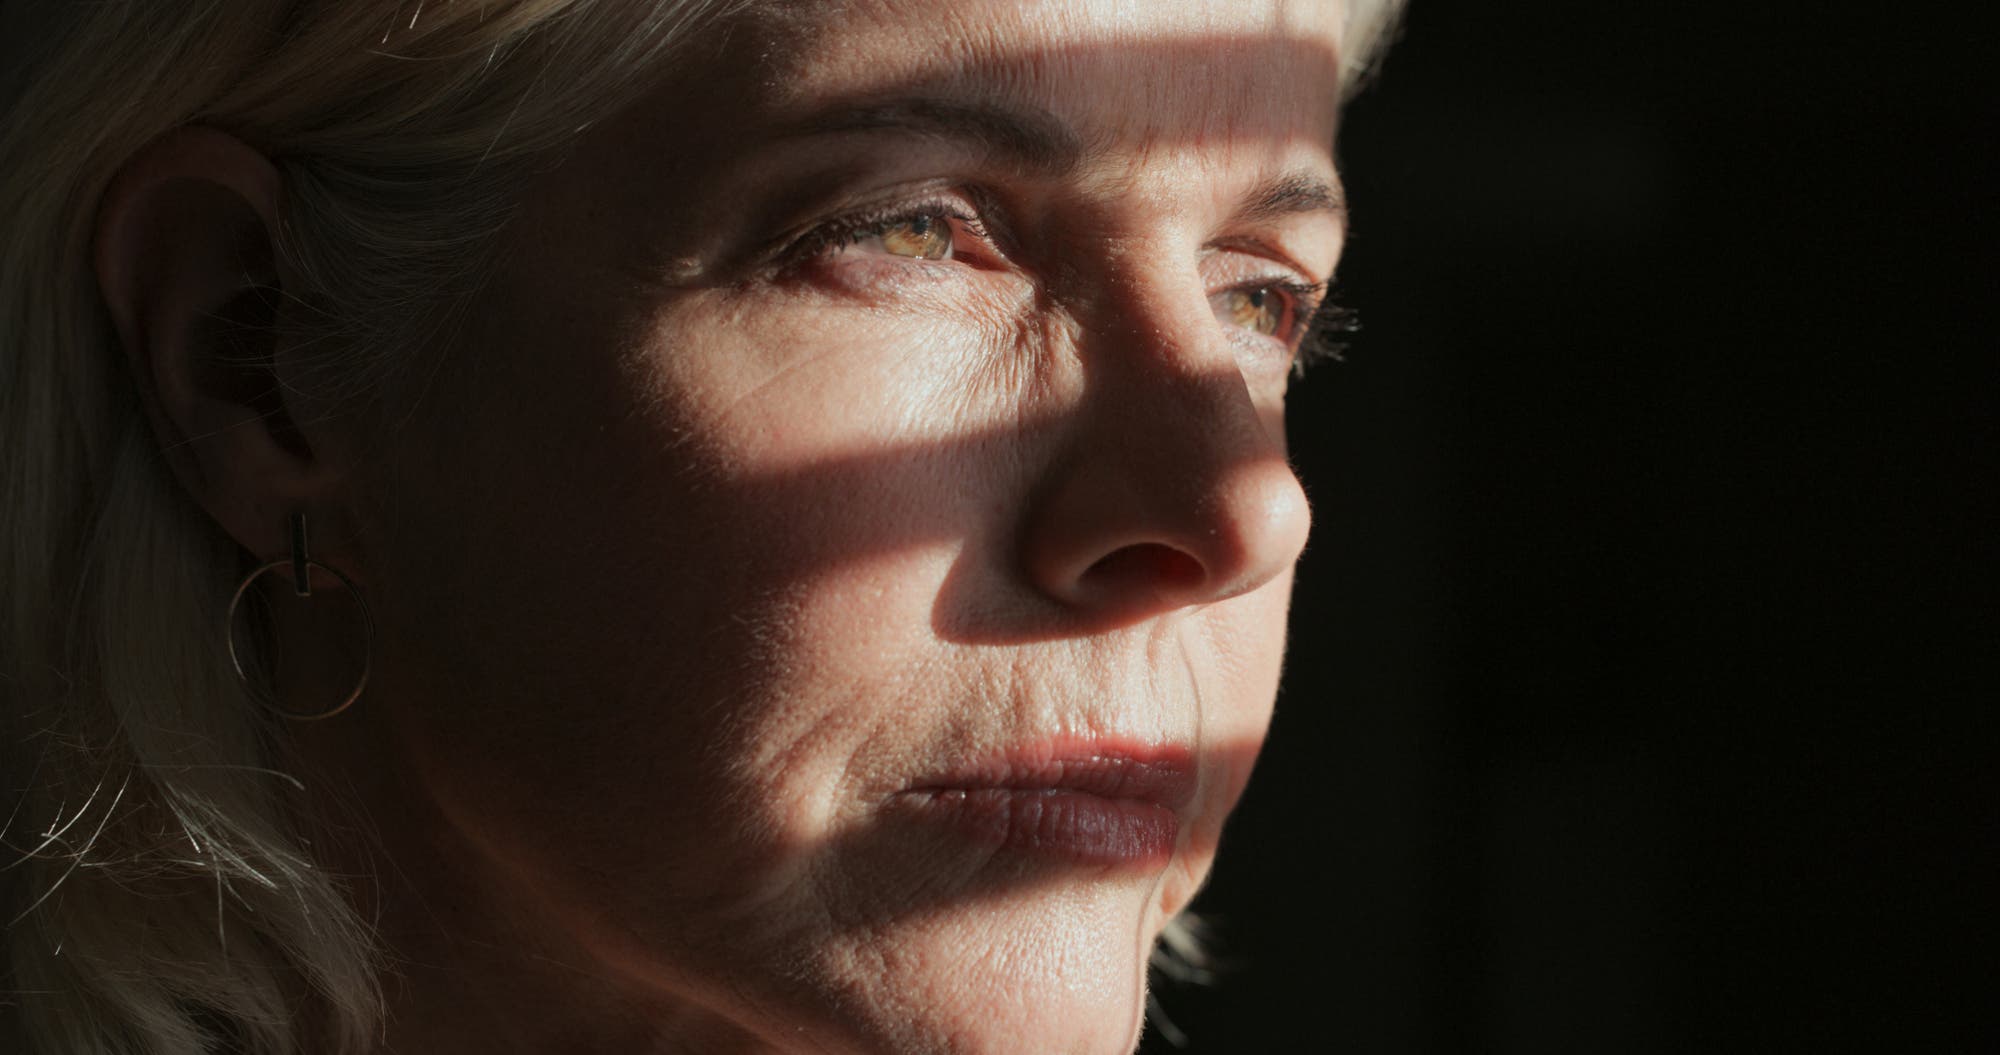 Gesicht einer ernst blickenden Frau in Großaufnahme, teilweise im Schatten, teilweise beleuchtet